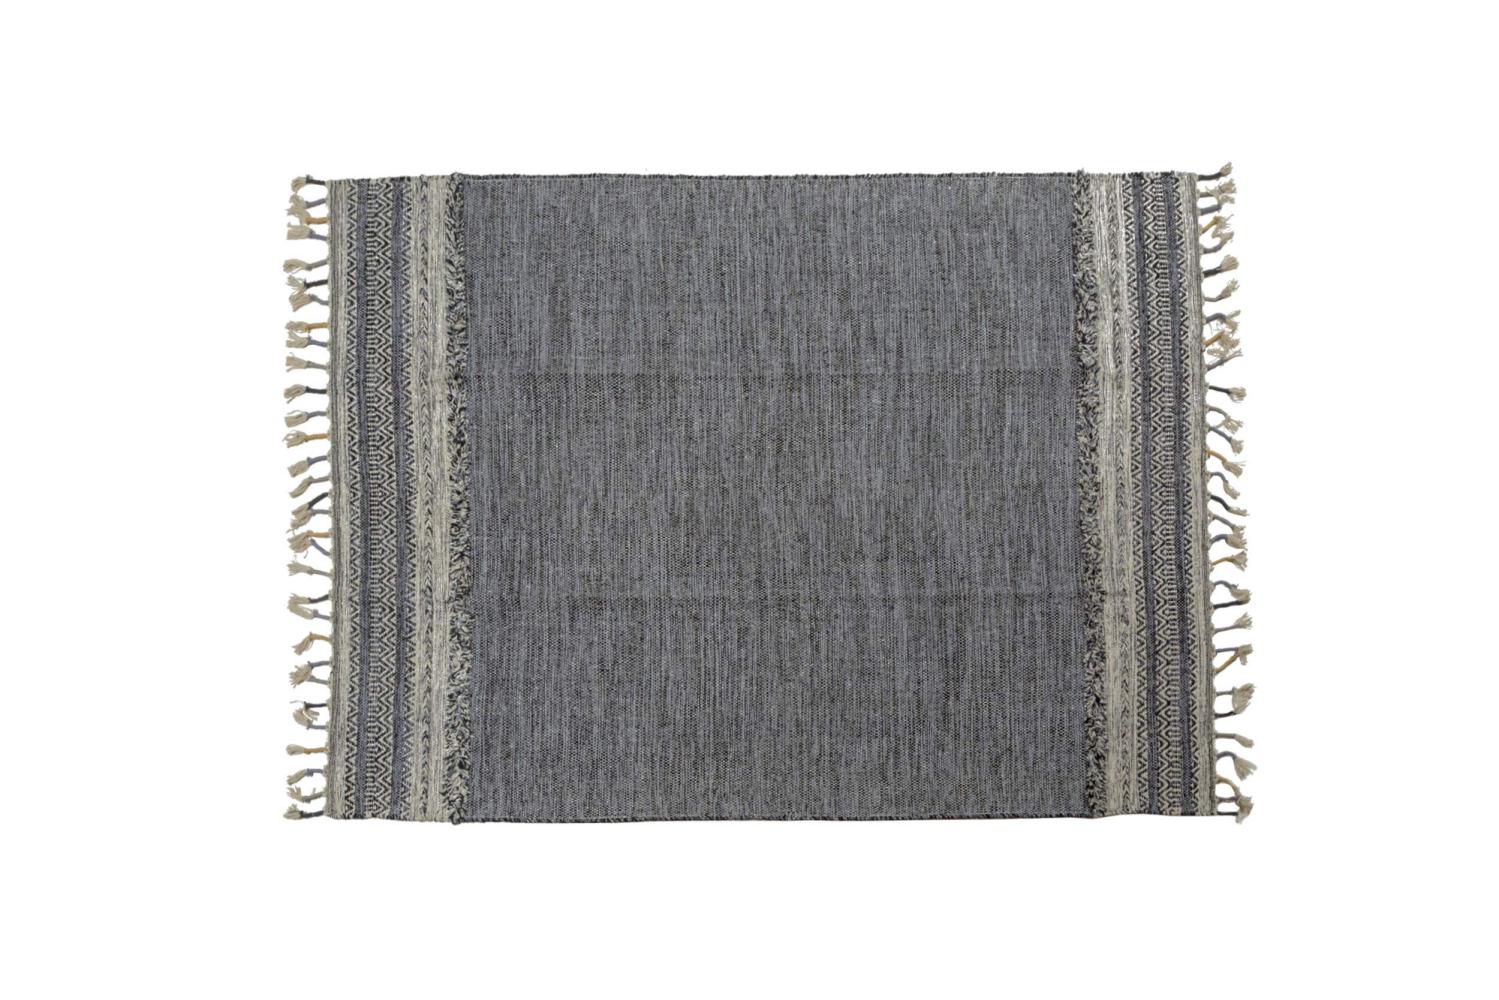 Dmora Moderner Boston-Teppich, Kelim-Stil, 100% Baumwolle, schwarz, 200x140cm Bild 1